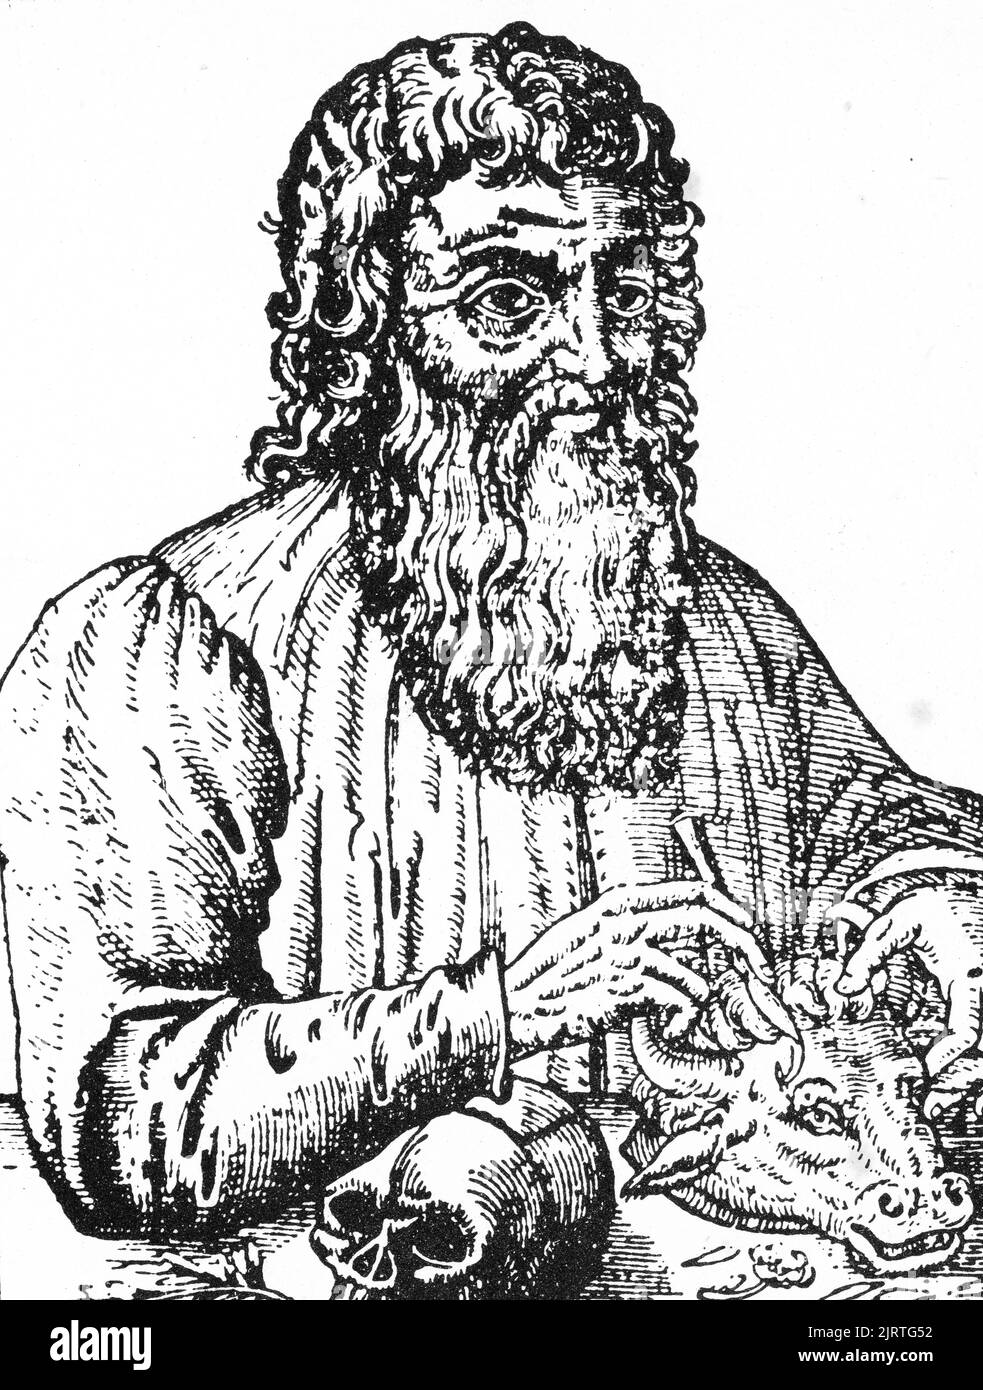 Ippocrate di Kos (C460-C370 a.C.), 1582. Ippocrate di Kos (C460-C370 a.C.), conosciuto anche come Ippocrate II, medico greco del periodo classico, considerato uno dei più importanti personaggi della storia della medicina, è spesso chiamato "Padre della medicina". Un bosco tratto dall'Opera di Ambroise Paré, 1582. Ambroise Paré (c1509-1590). Foto Stock